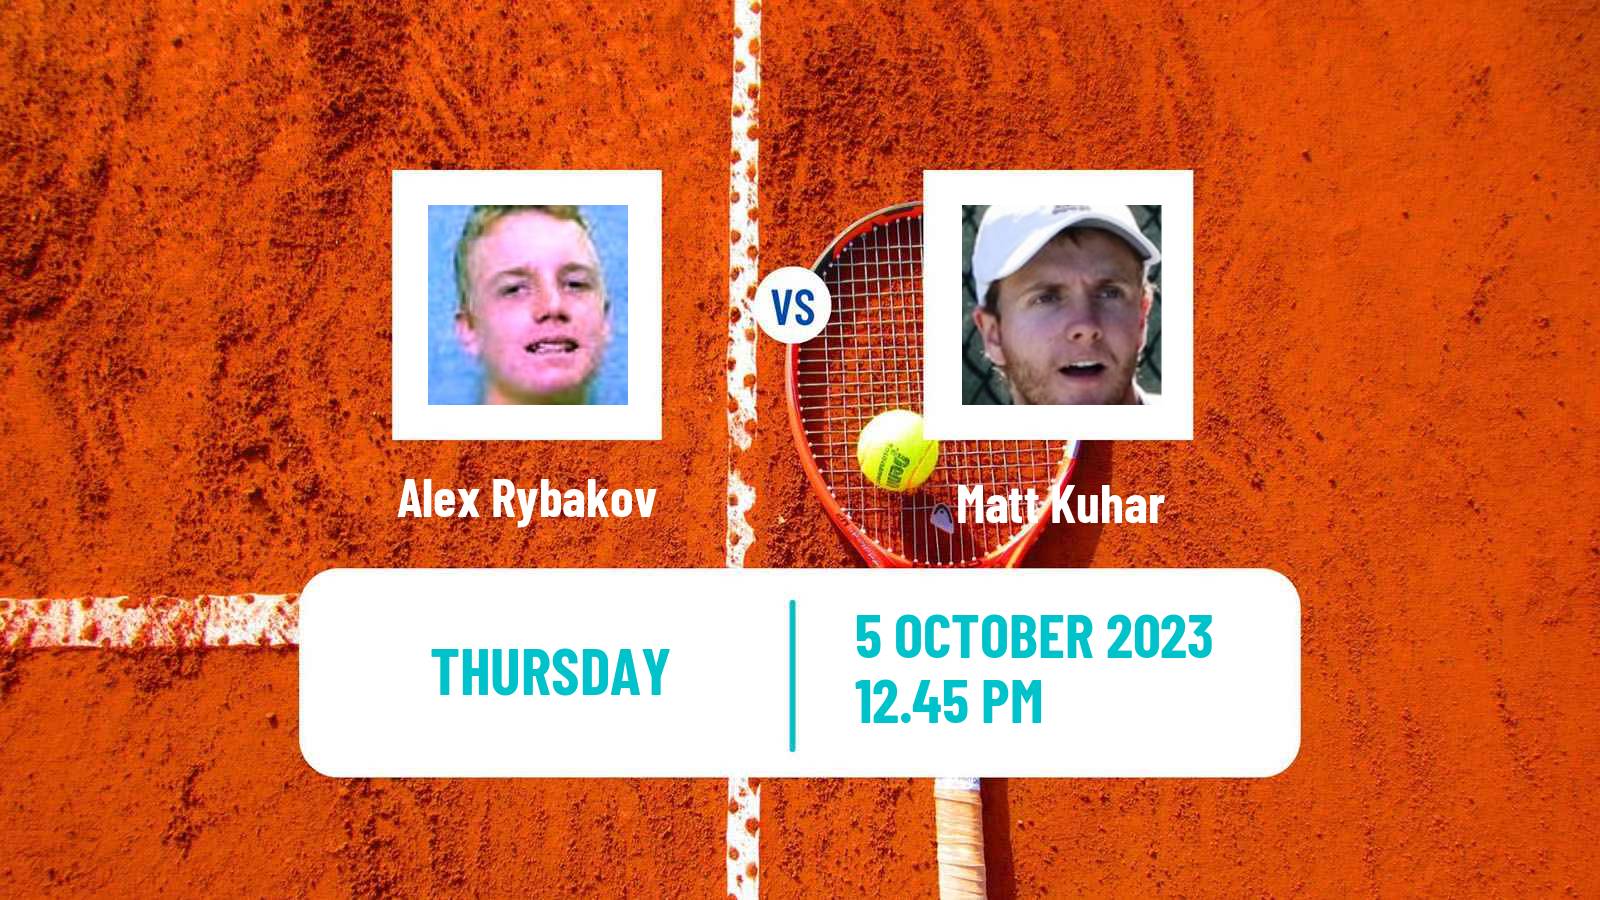 Tennis ITF M15 Ithaca Ny 2 Men Alex Rybakov - Matt Kuhar